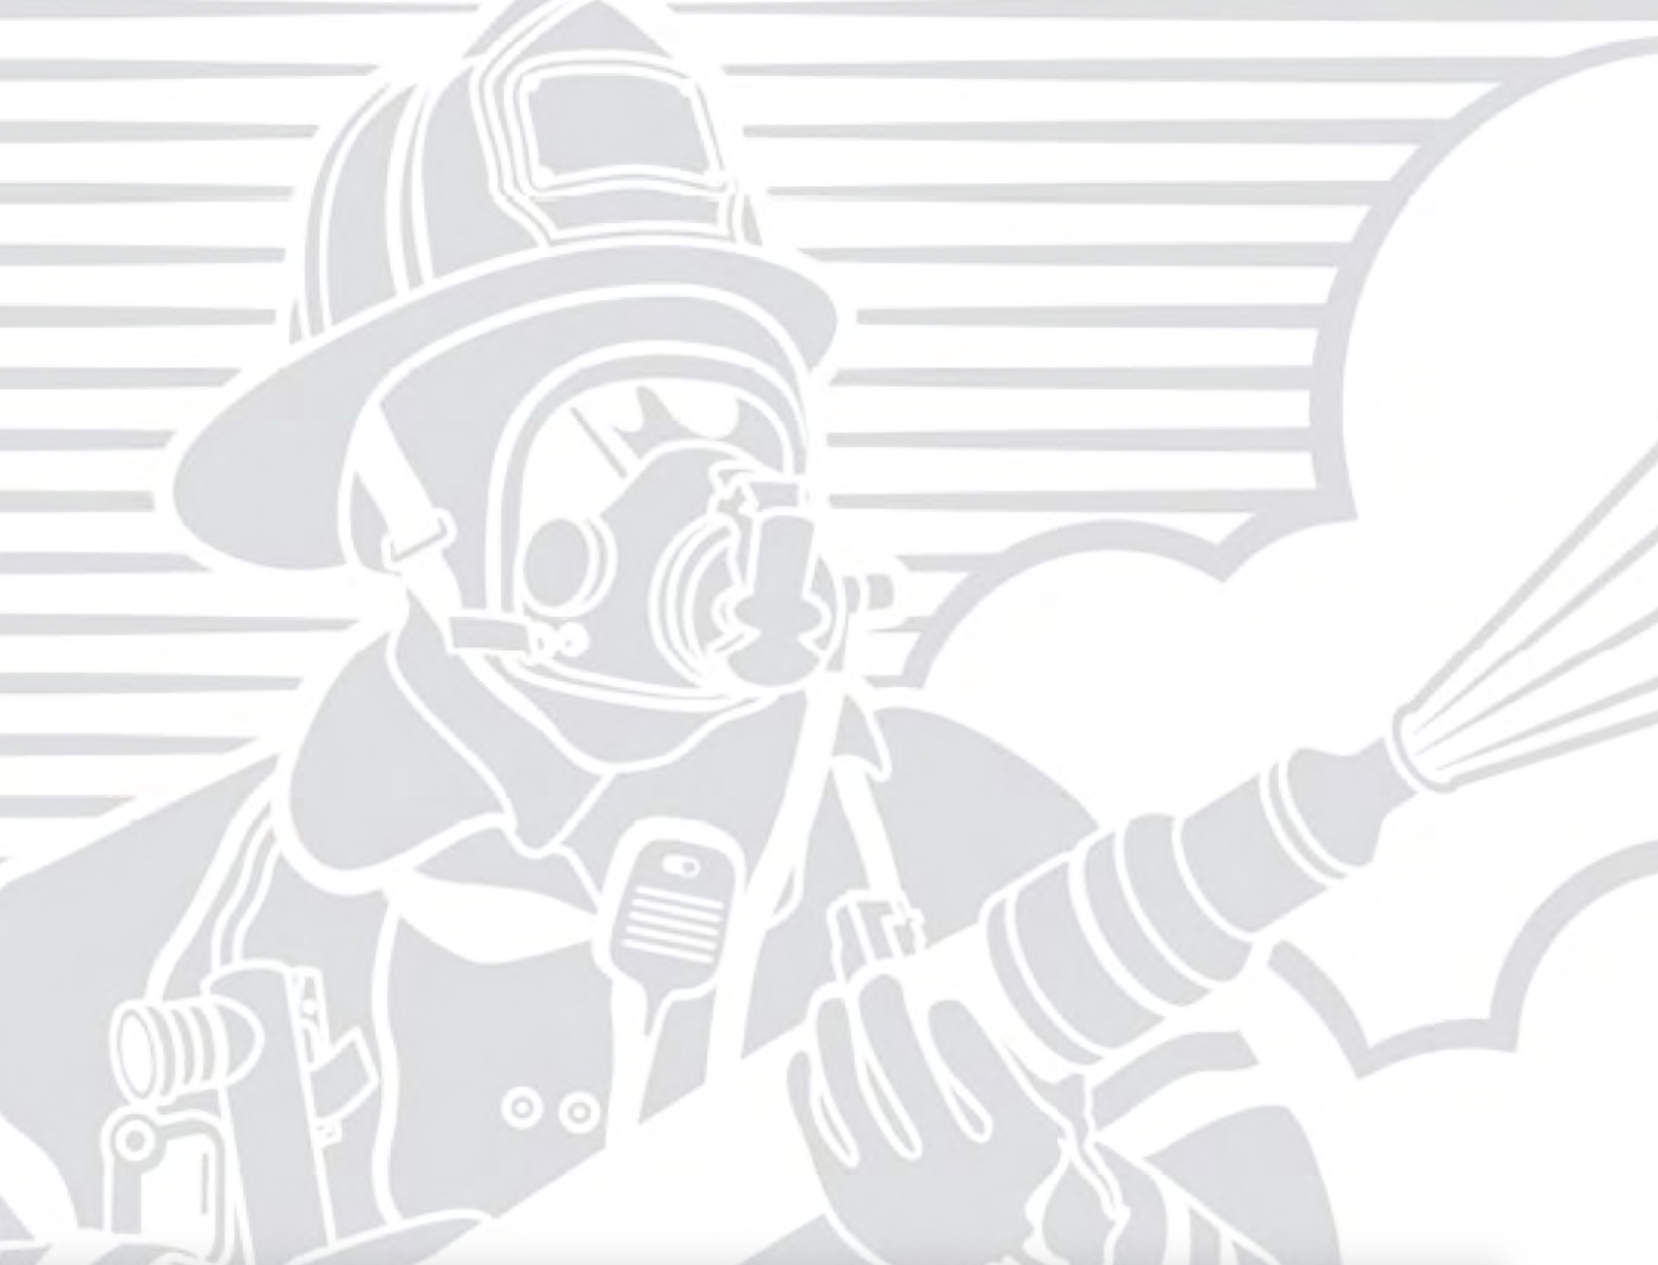 UL Firefighter Safety